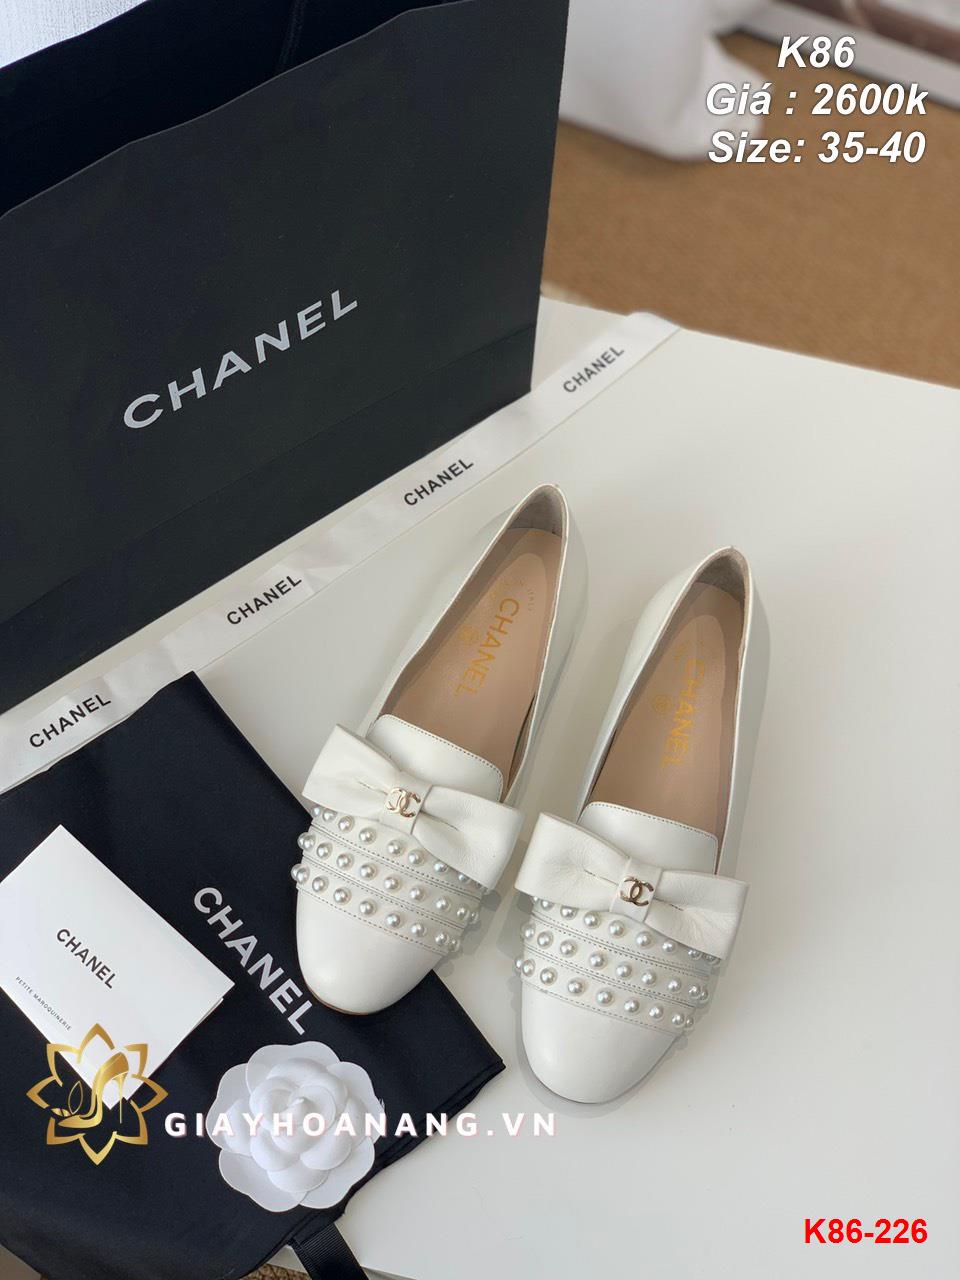 K86-226 Chanel giày bệt siêu cấp